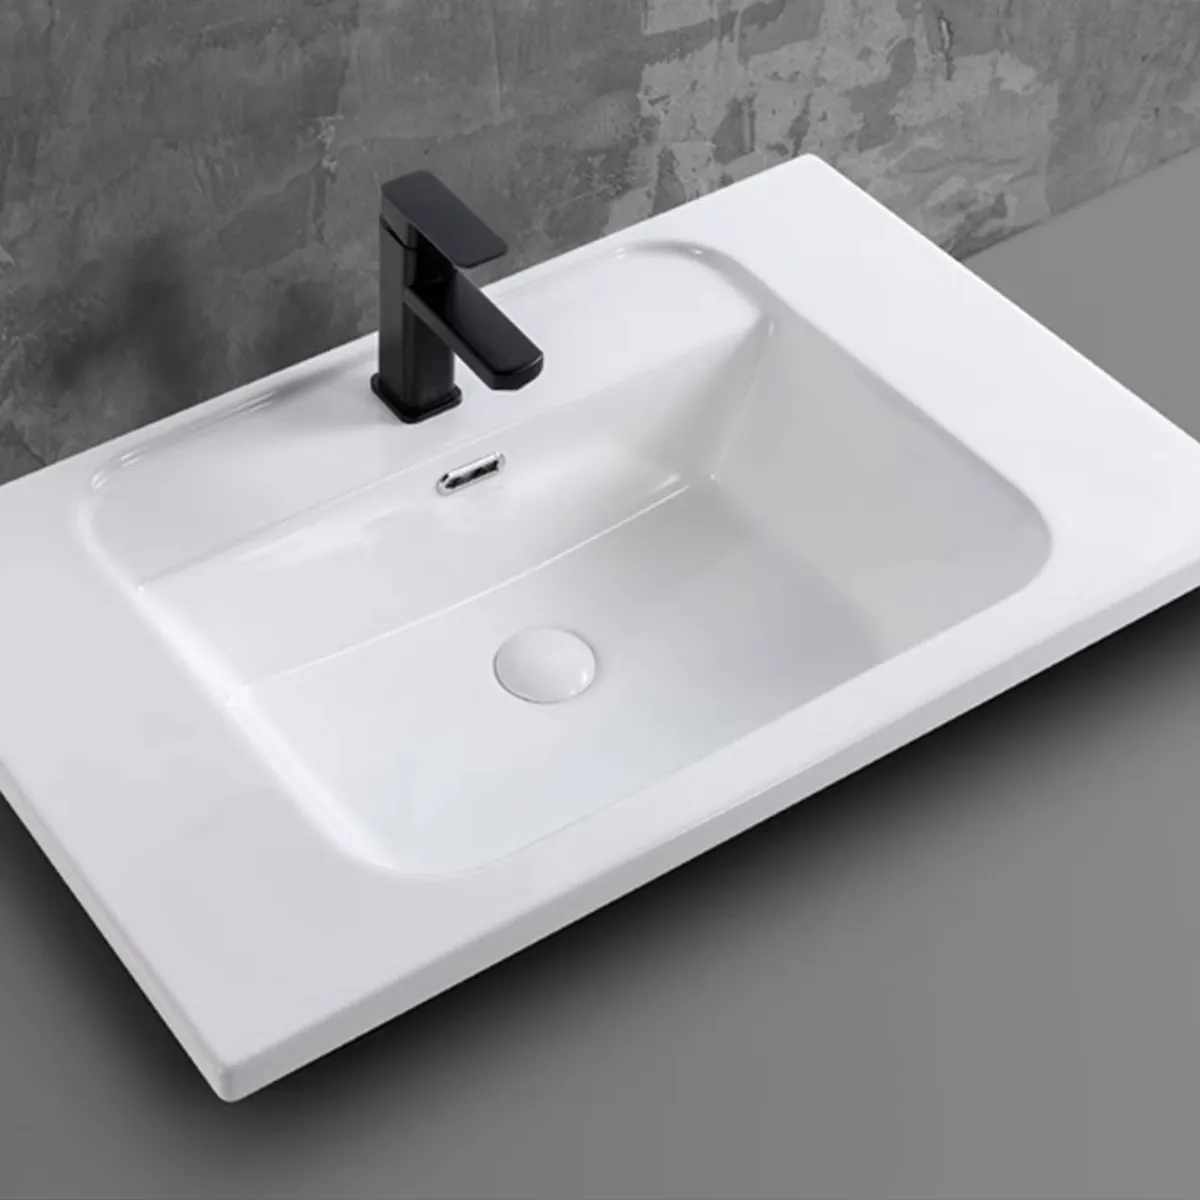 Chậu rửa lavabo âm bàn Palado - Sự kết hợp hoàn hảo giữa chất lượng và thiết kế.